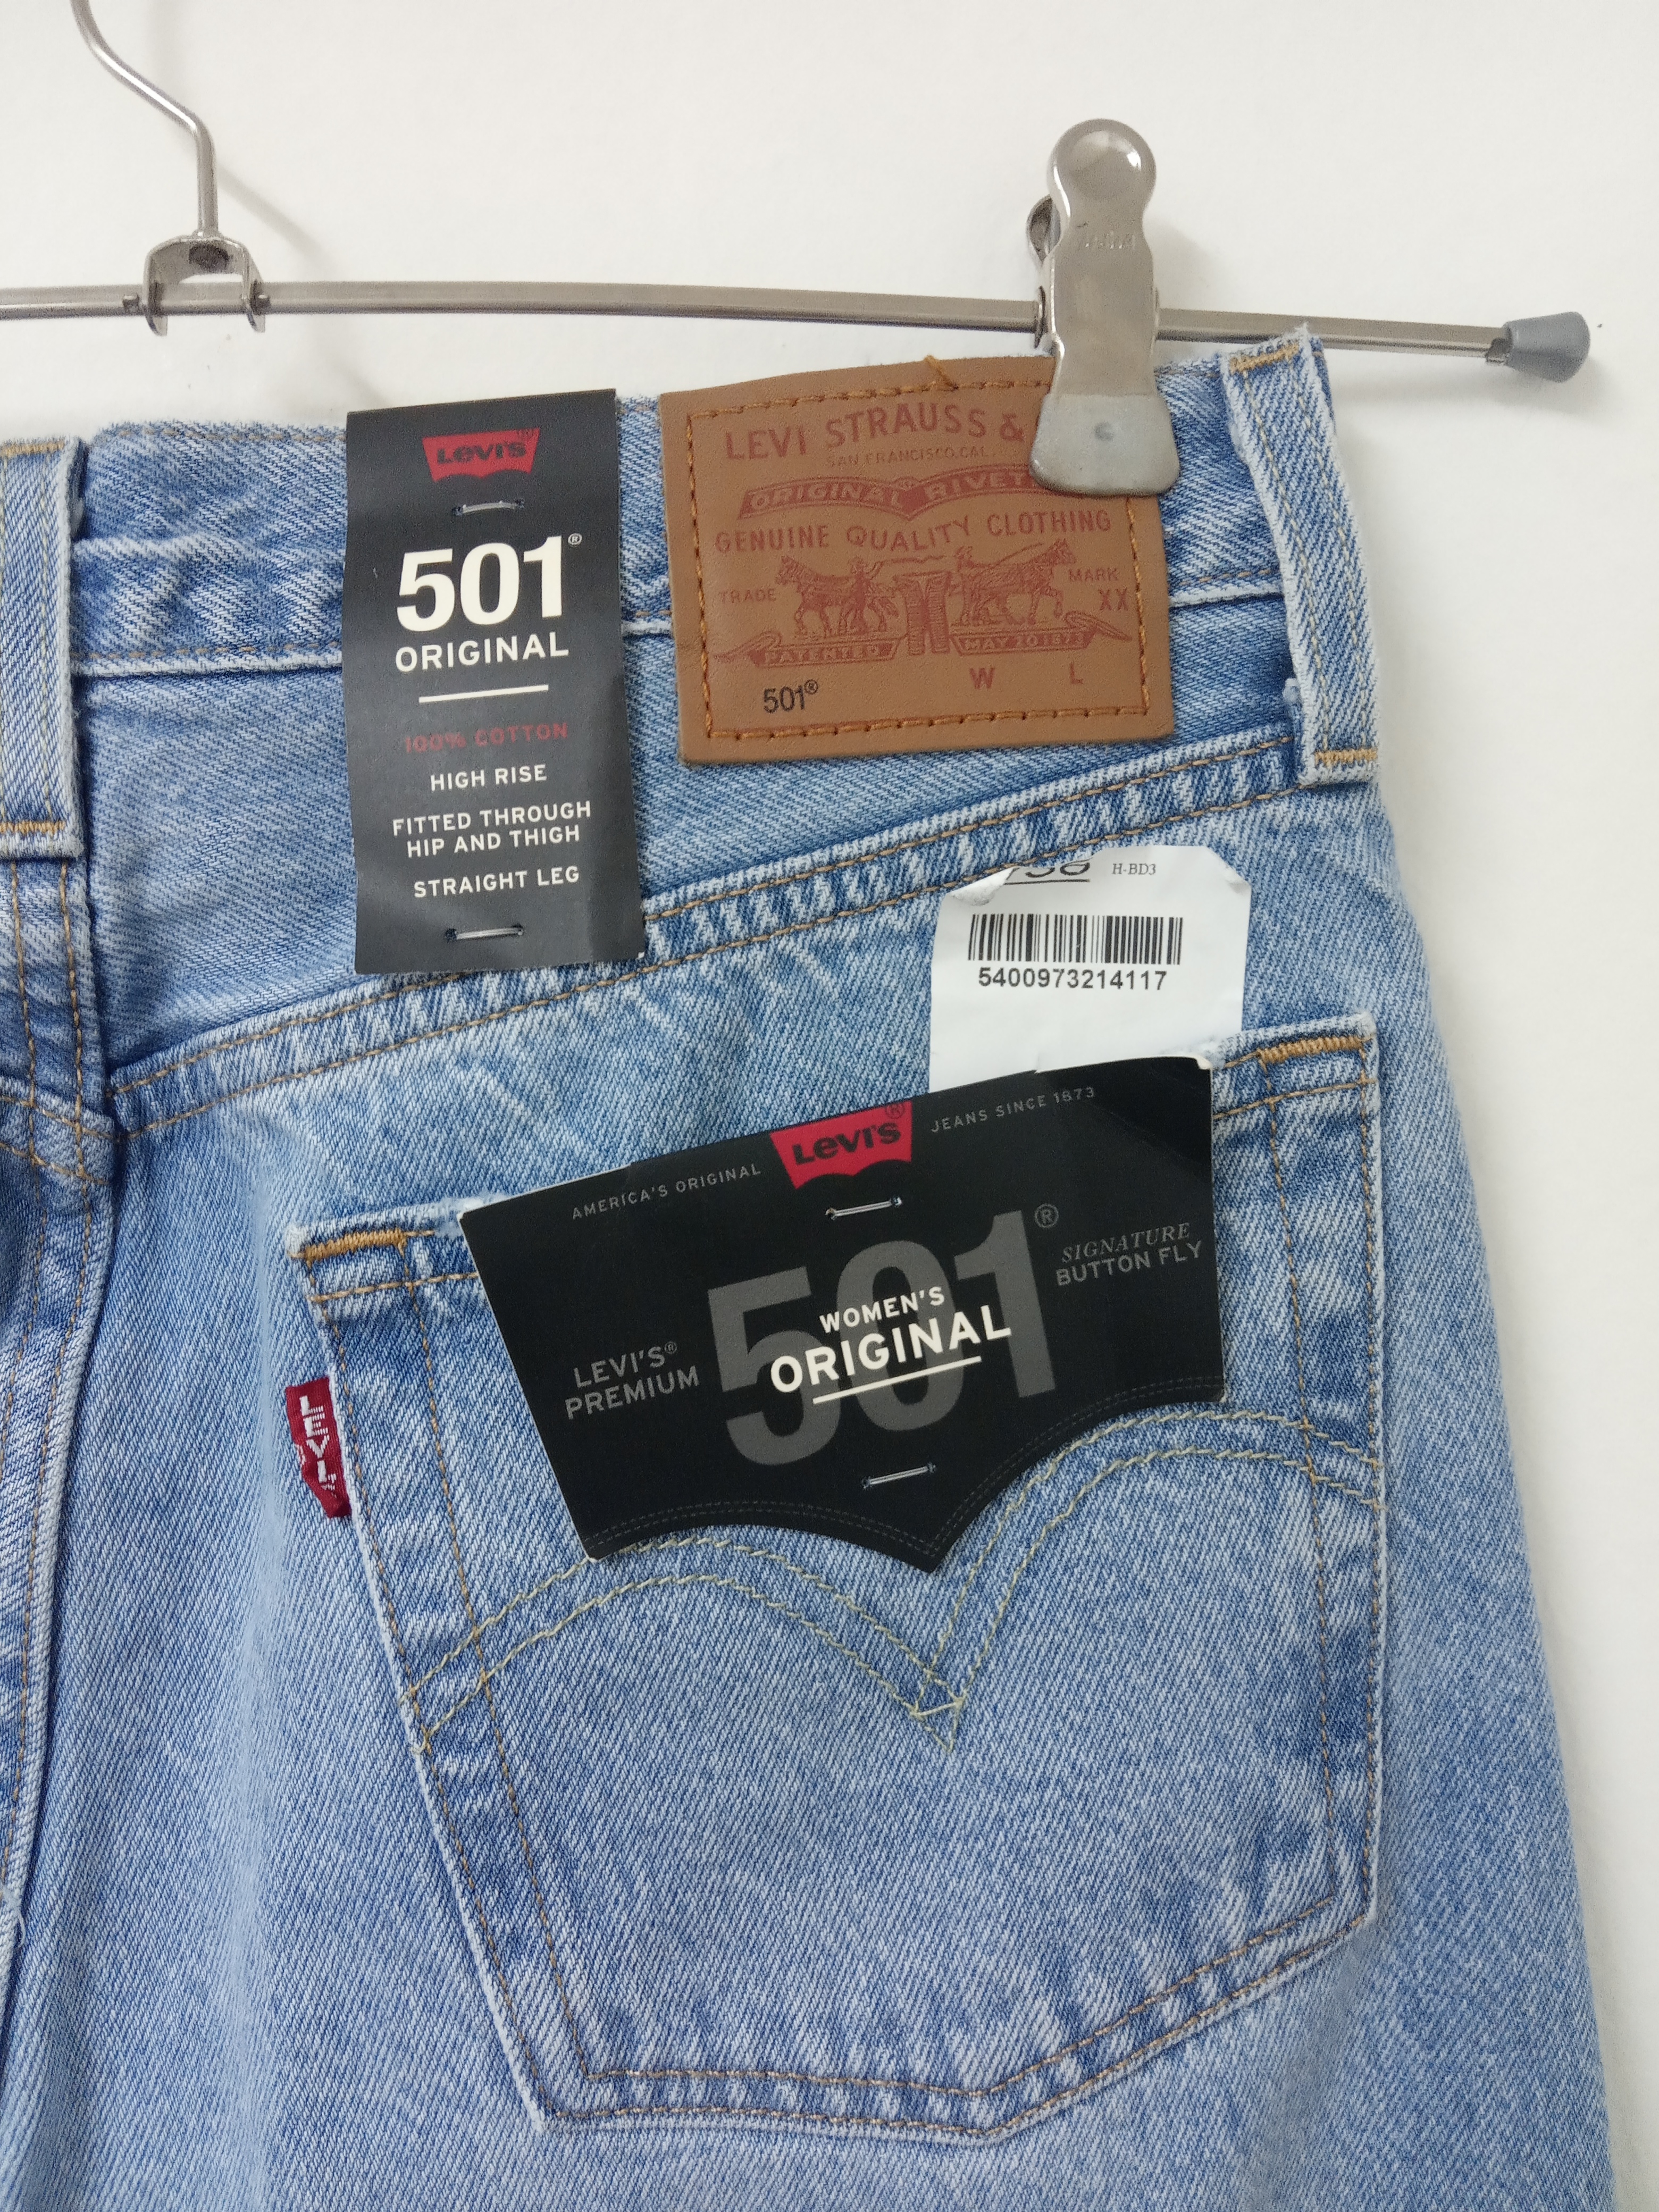 תמונה 3 ,ג'ינס ליווייס 501 אוריגינלי מי למכירה בתל אביב  ביגוד ואביזרים  ג'ינסים ומכנסיים